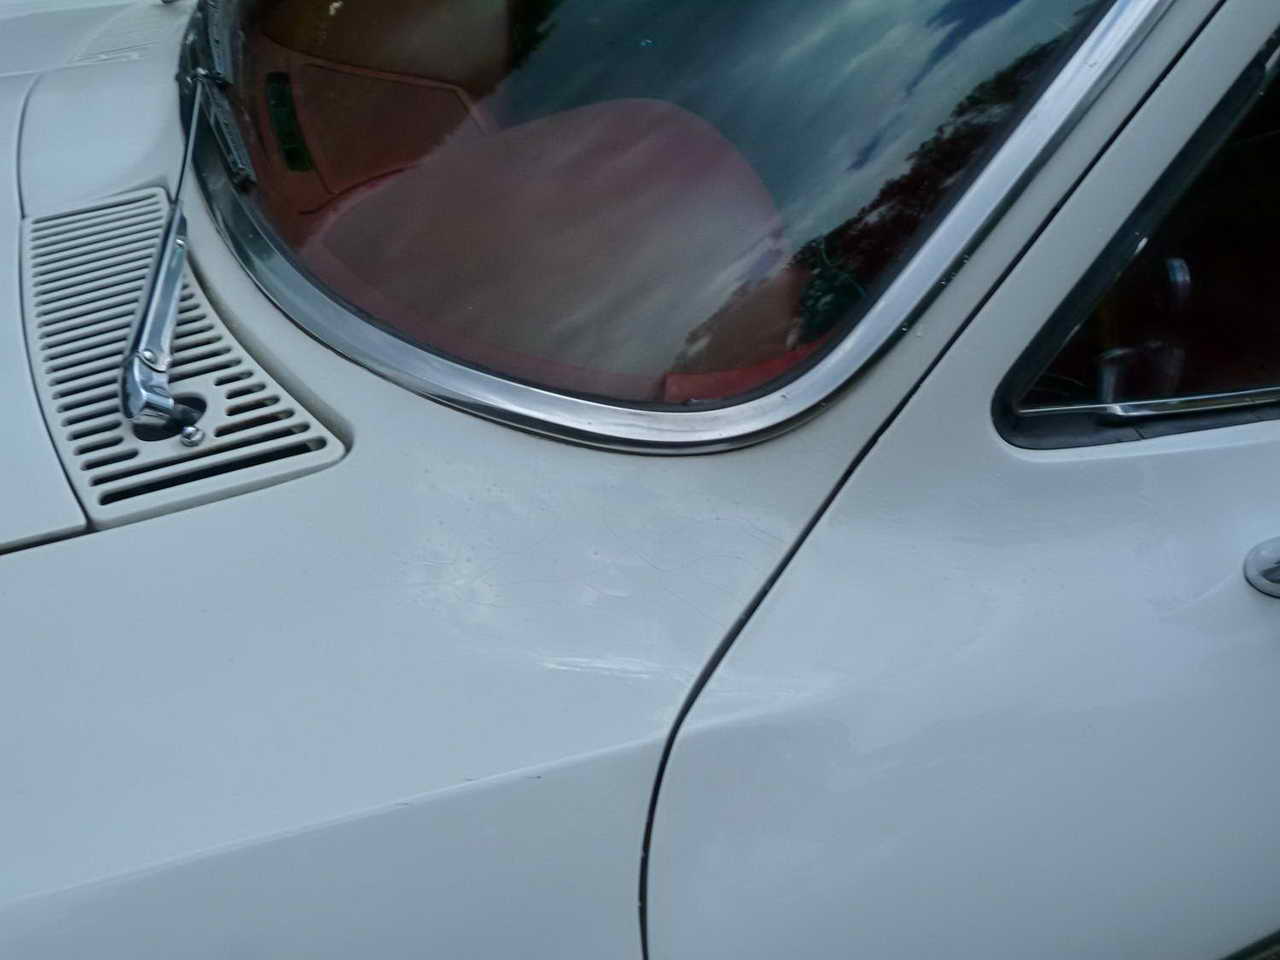 1965 Corvette Convertible Ermine White